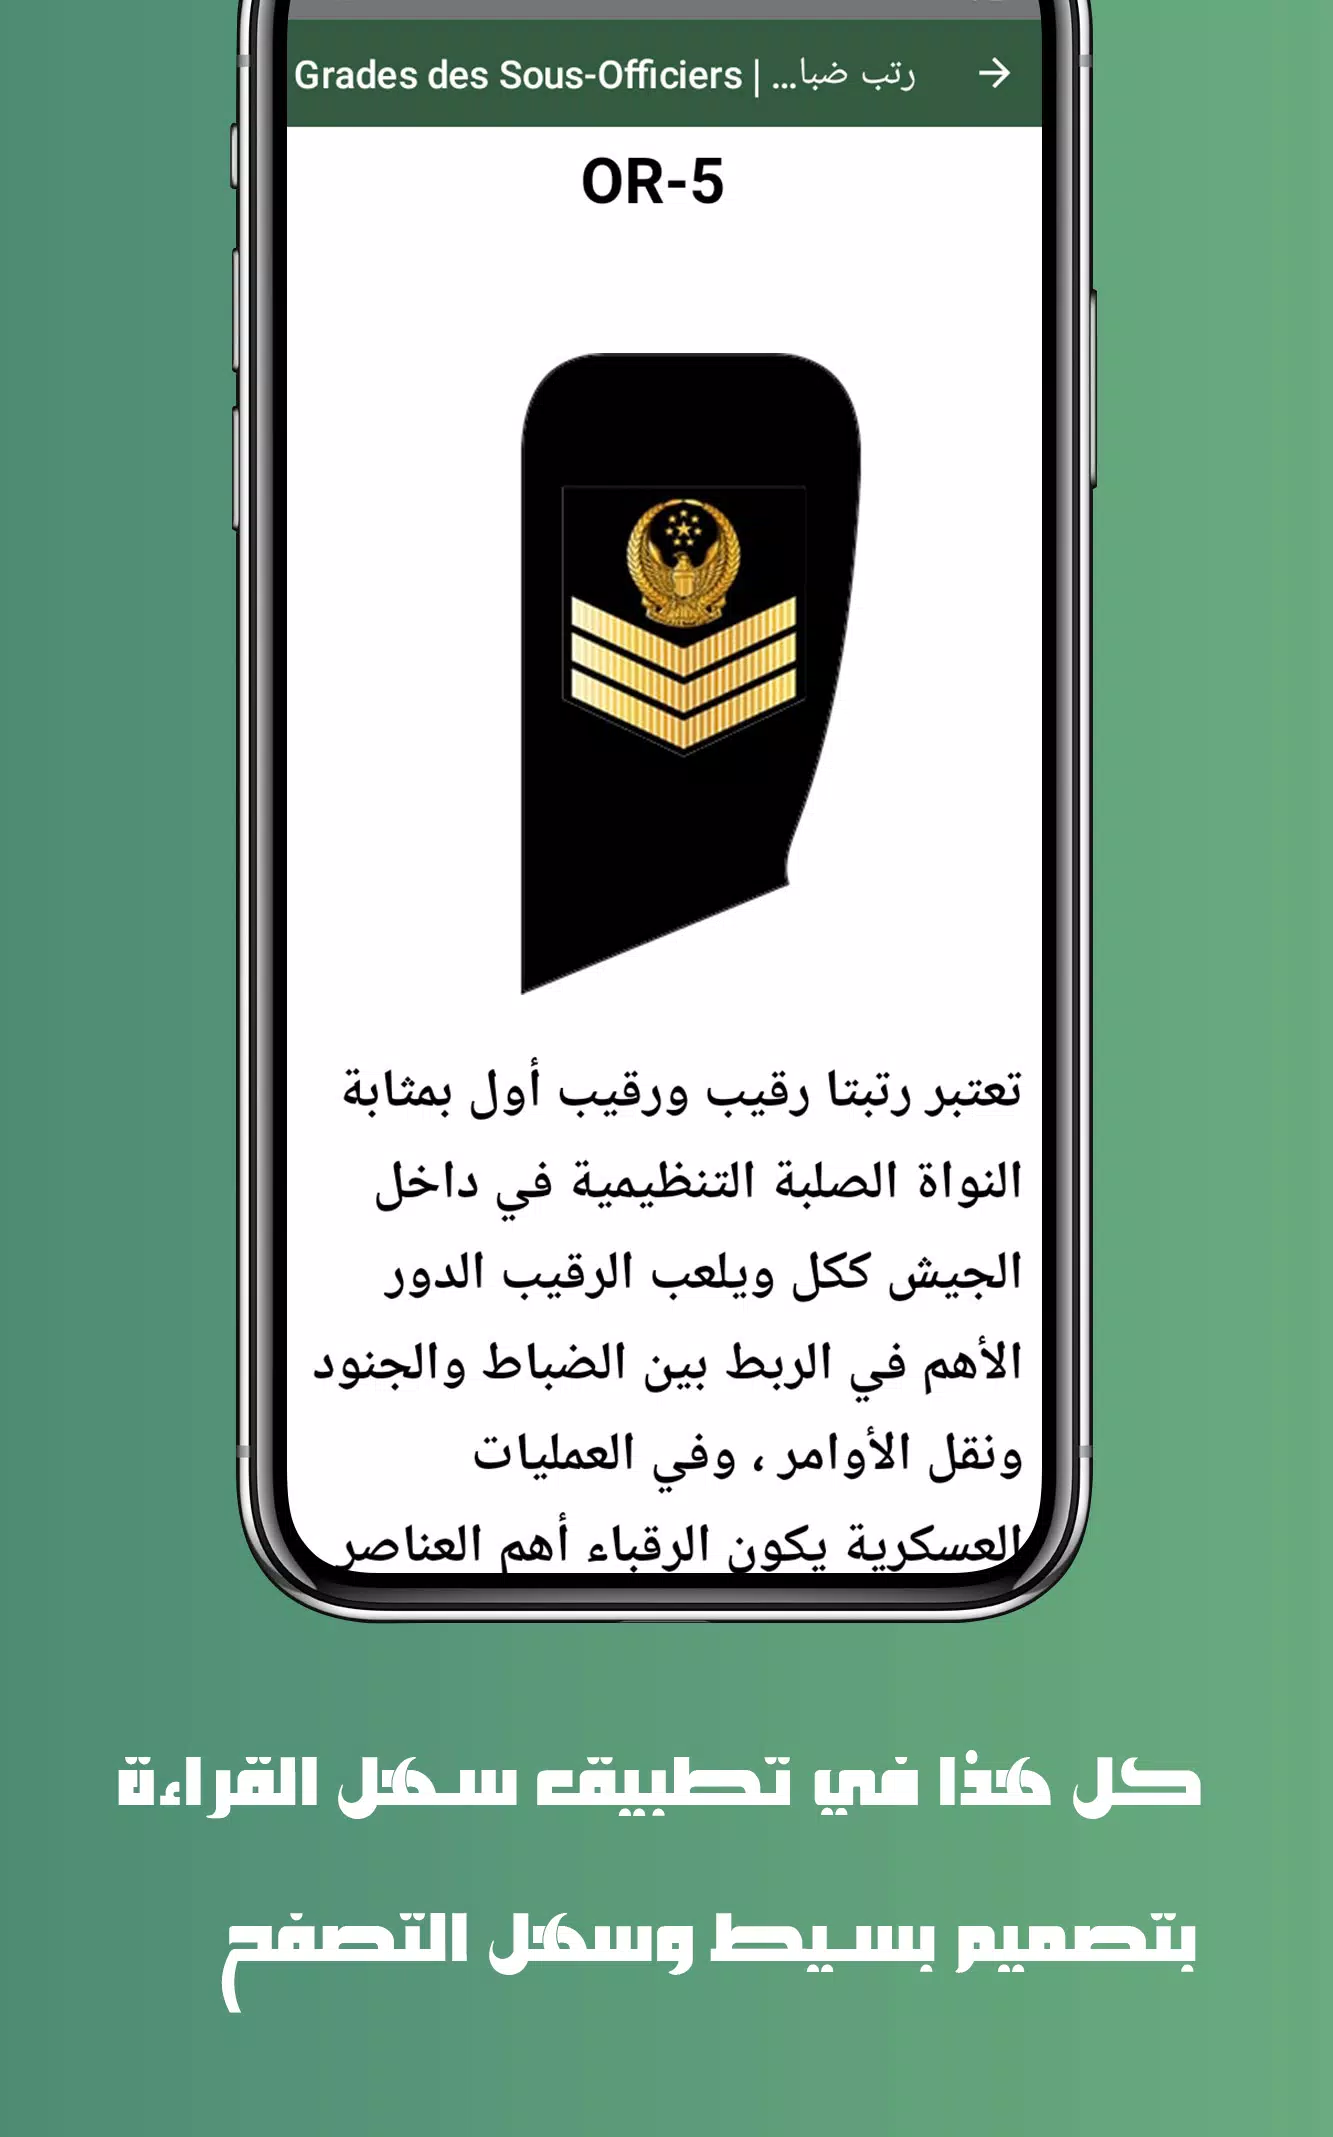 الرتب العسكرية الإماراتية UAE military ranks安卓版应用APK下载